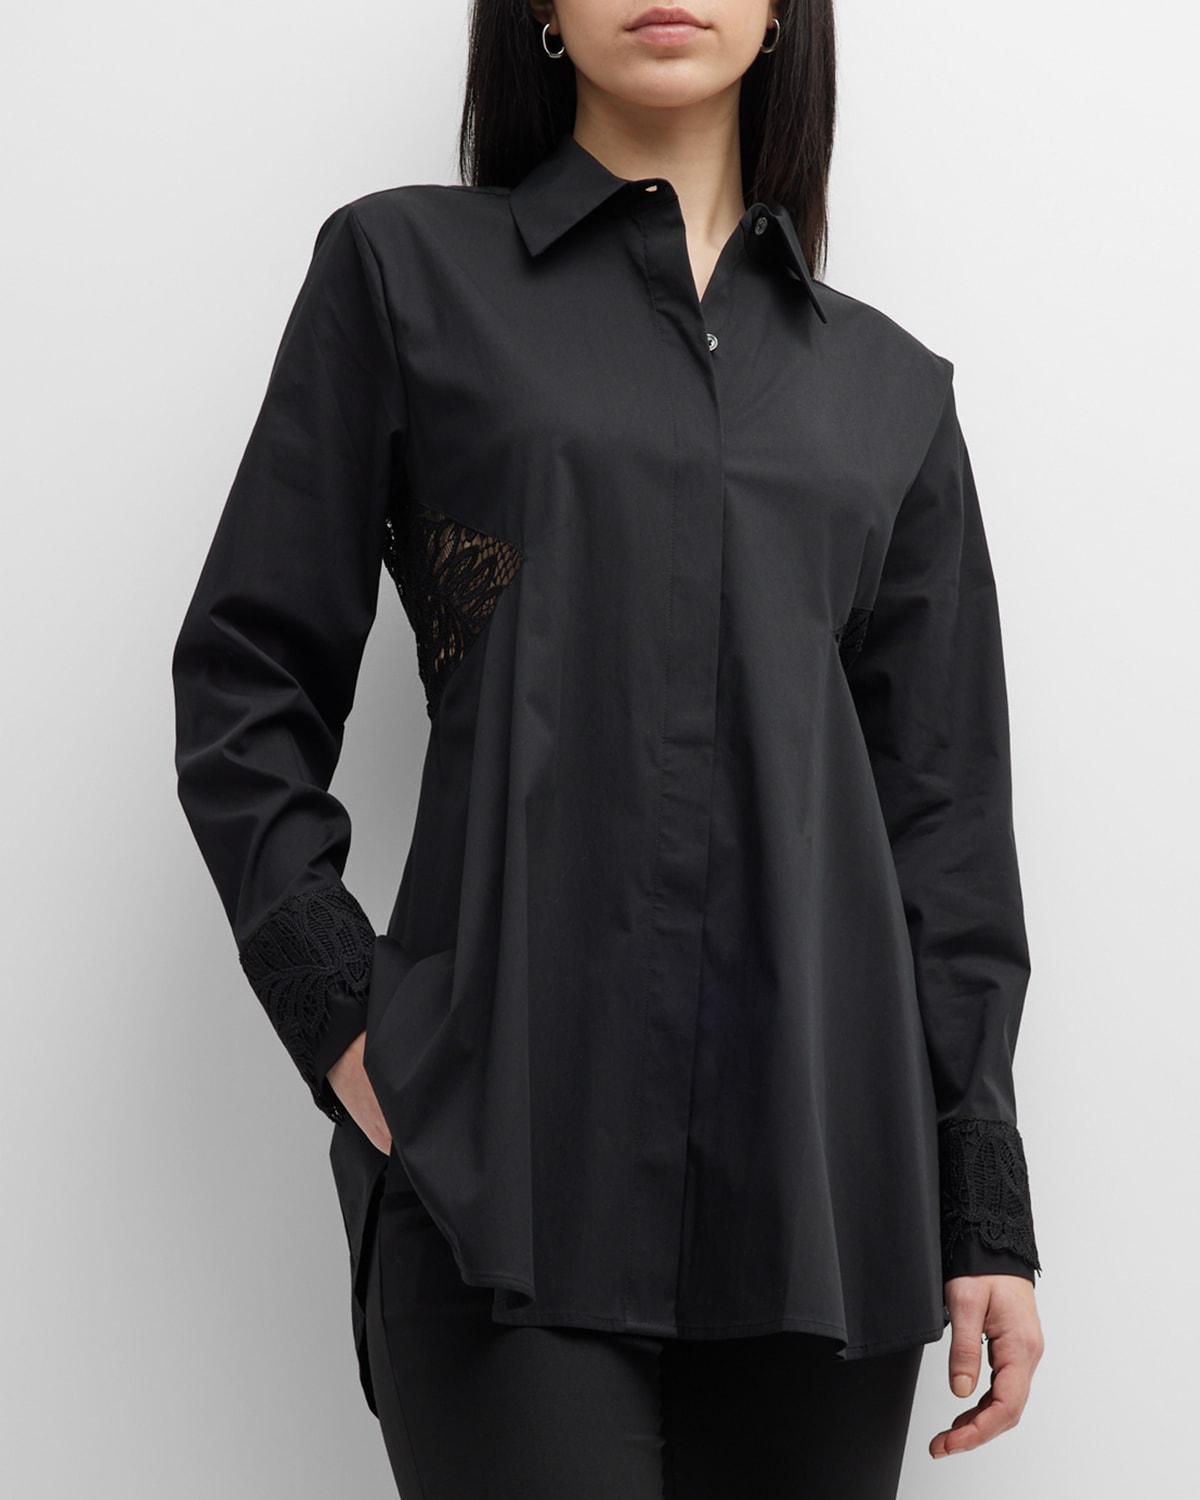 Donna Karan Jersey Side Twist Sheath Dress - Black - Medium